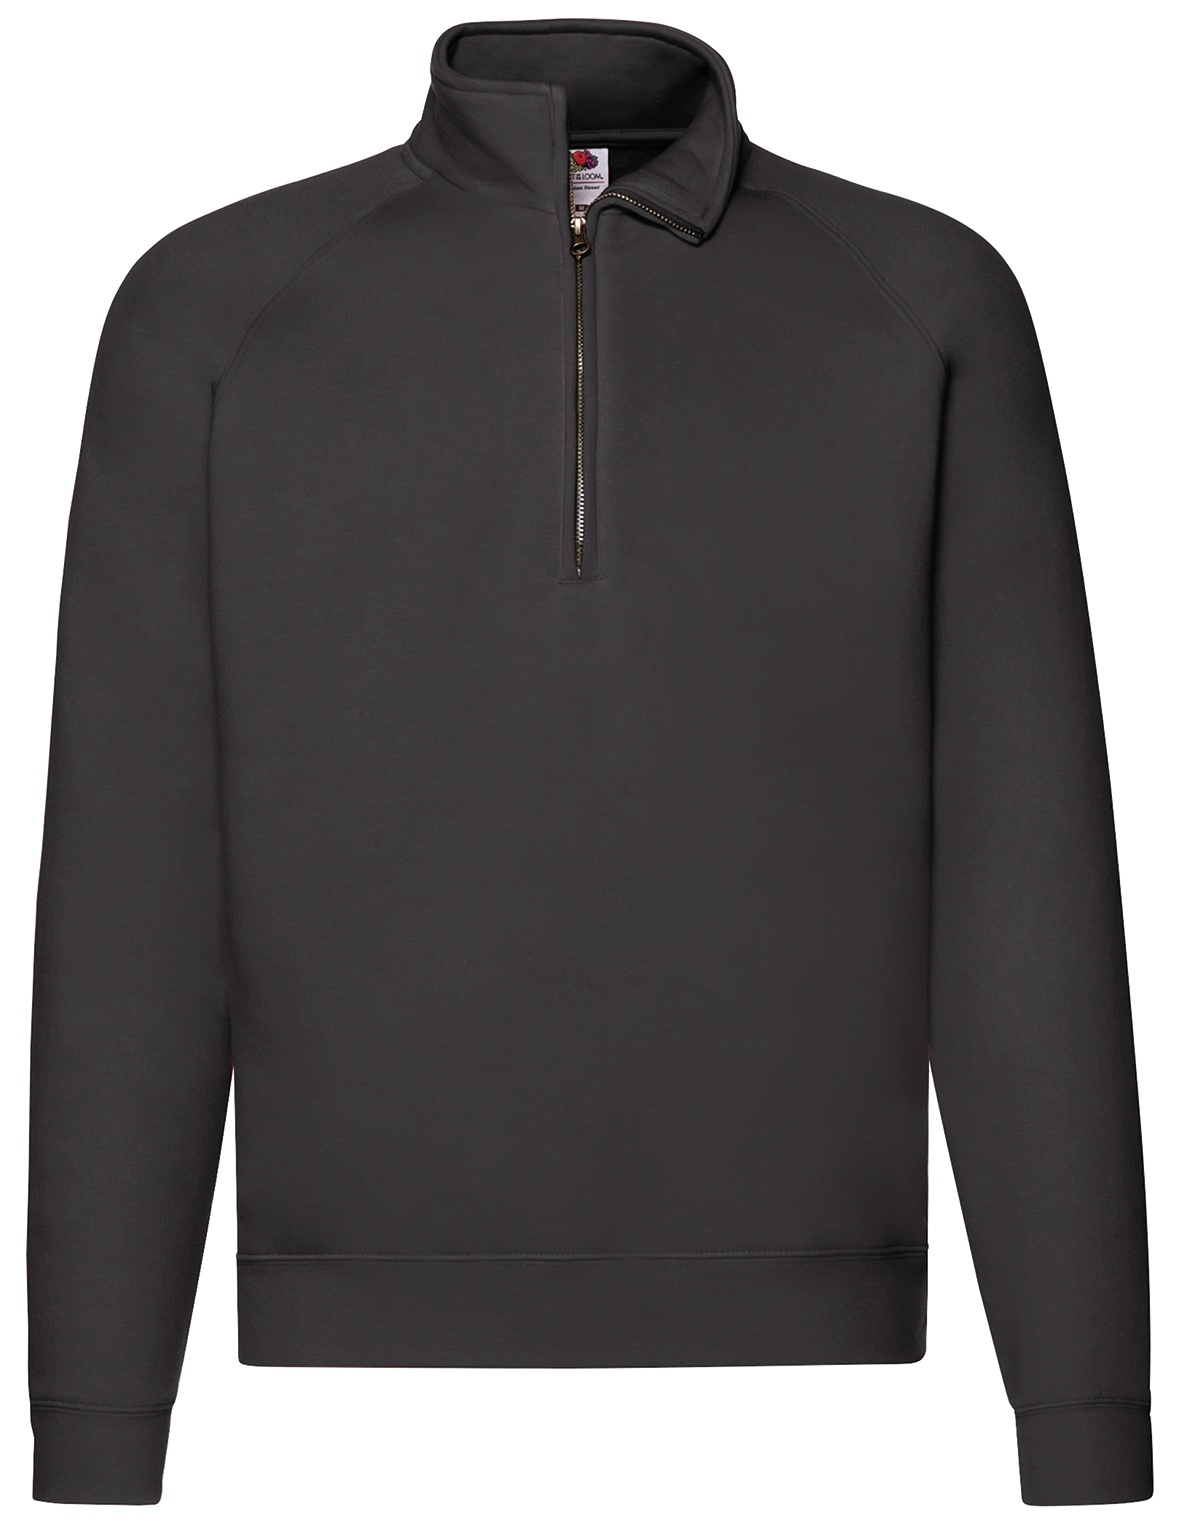 Fruit of the Loom Premium PREMIUM ZIP NECK SWEAT - Herren Sweatshirt mit Reißverschluss, schwarz, XL